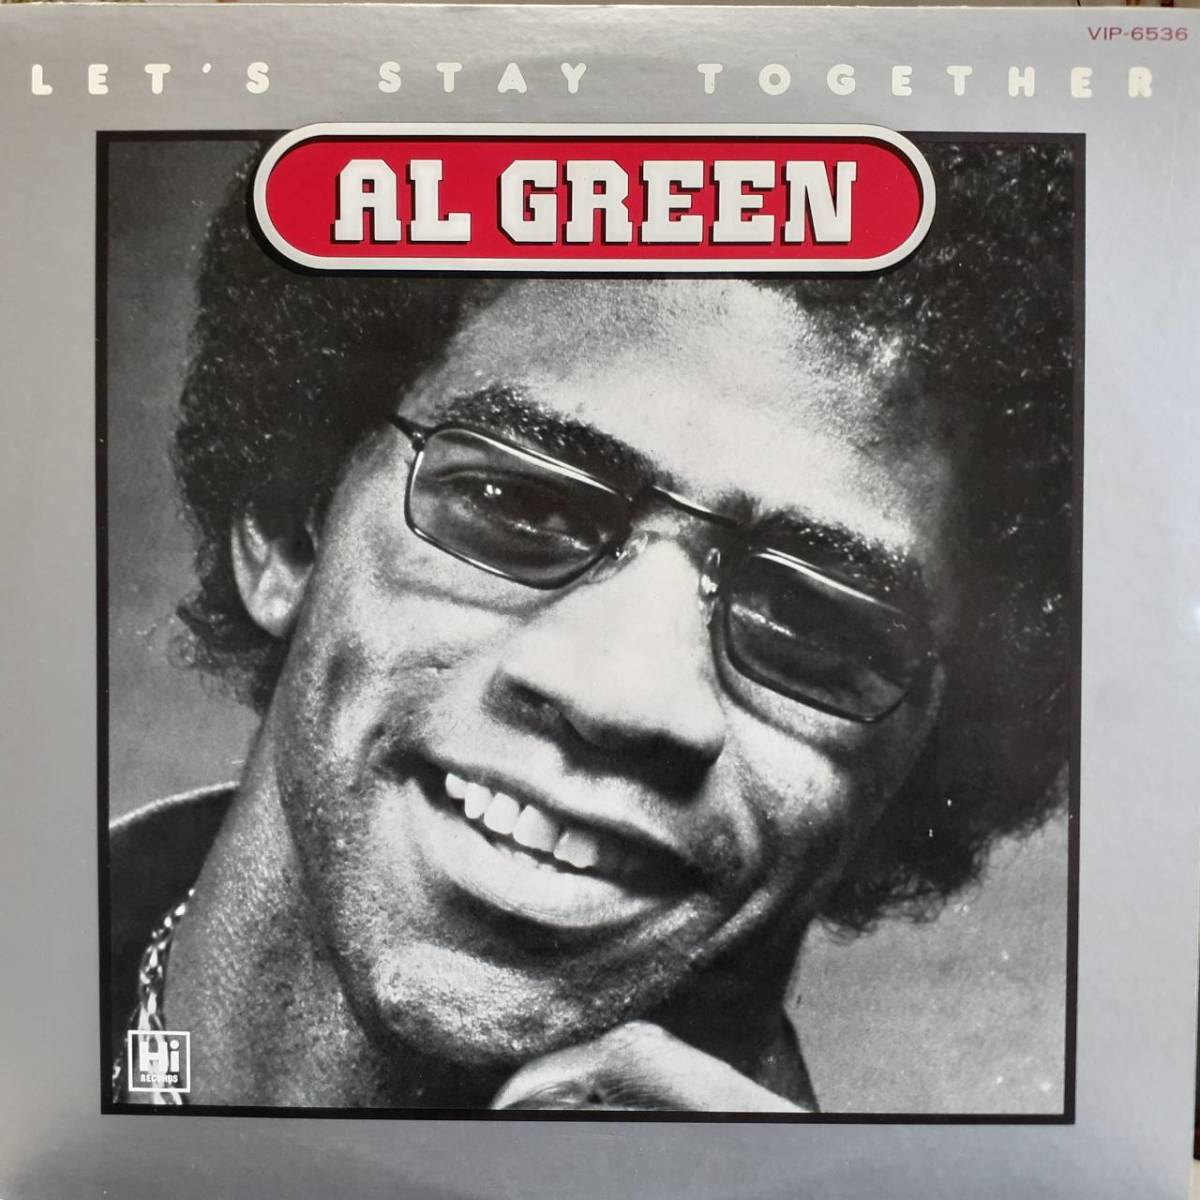 珍盤デフジャケ 日本盤LP！Al Green / Let's Stay Together 1972年作の78年盤 VICTOR VIP-6536 アル・グリーン レッツ・ステイ・トゥゲザー